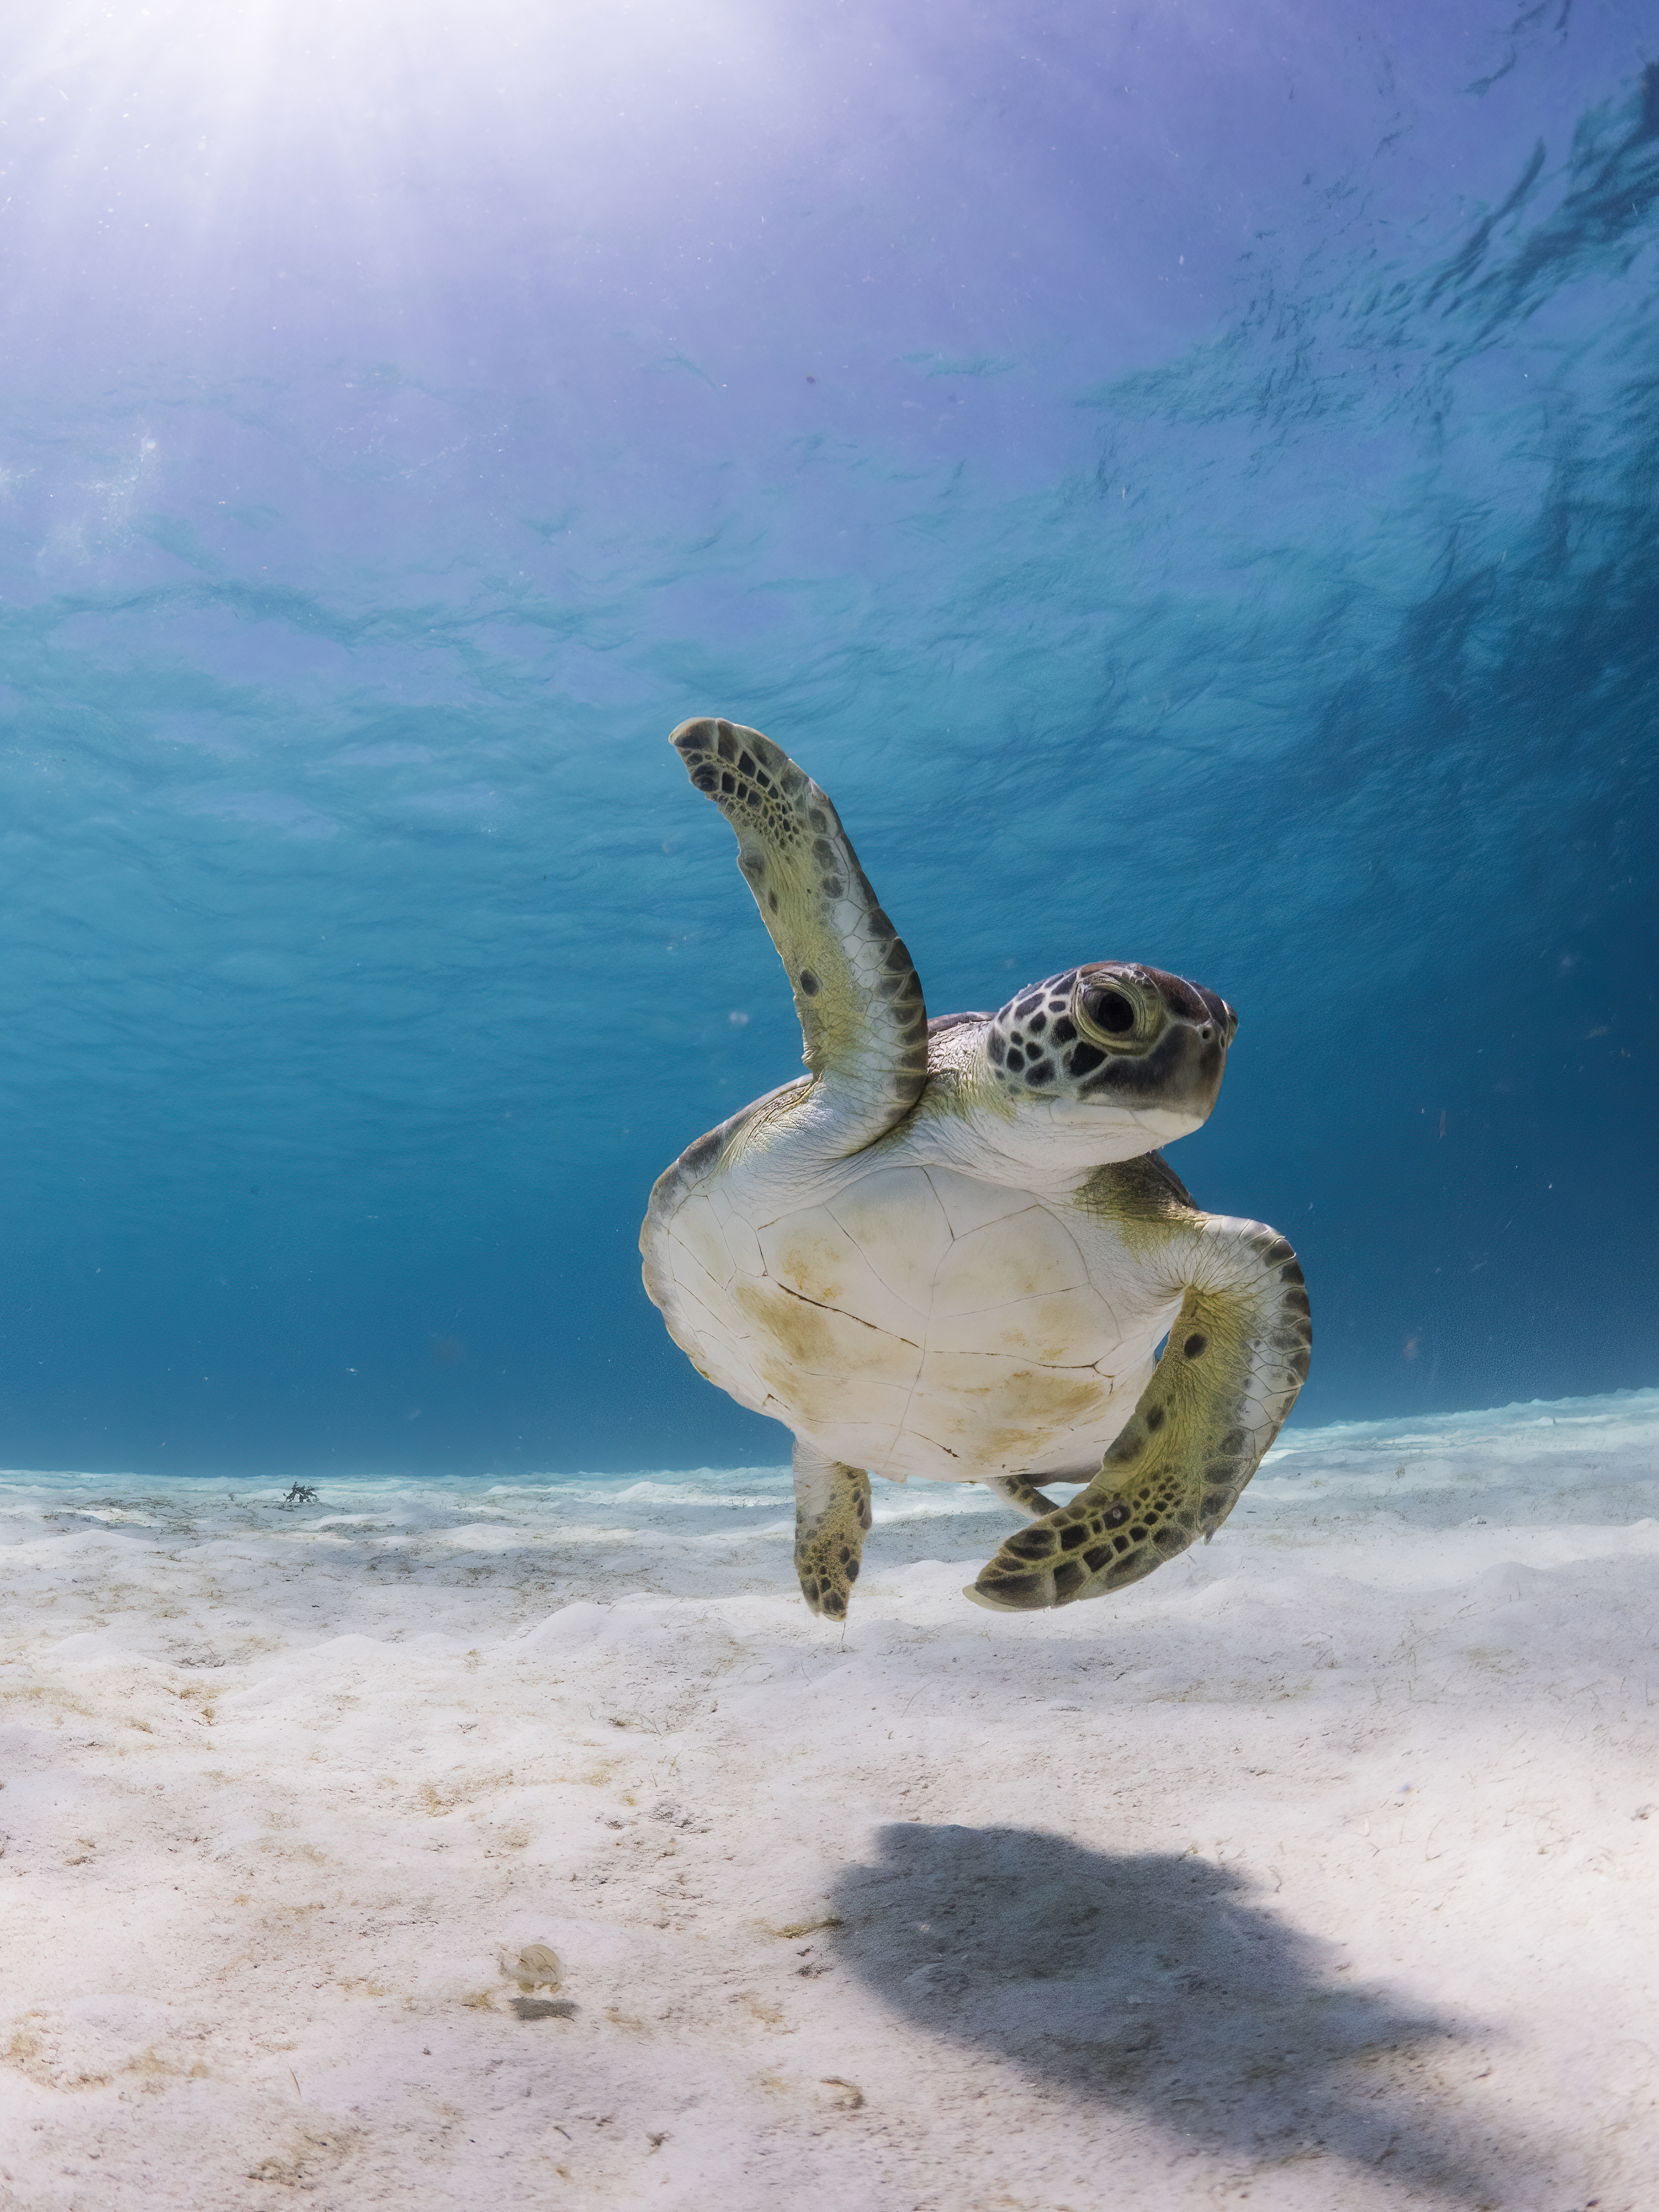 Uma tartaruga marinha nada em águas límpidas com uma barbatana levantada acima de si mesma.